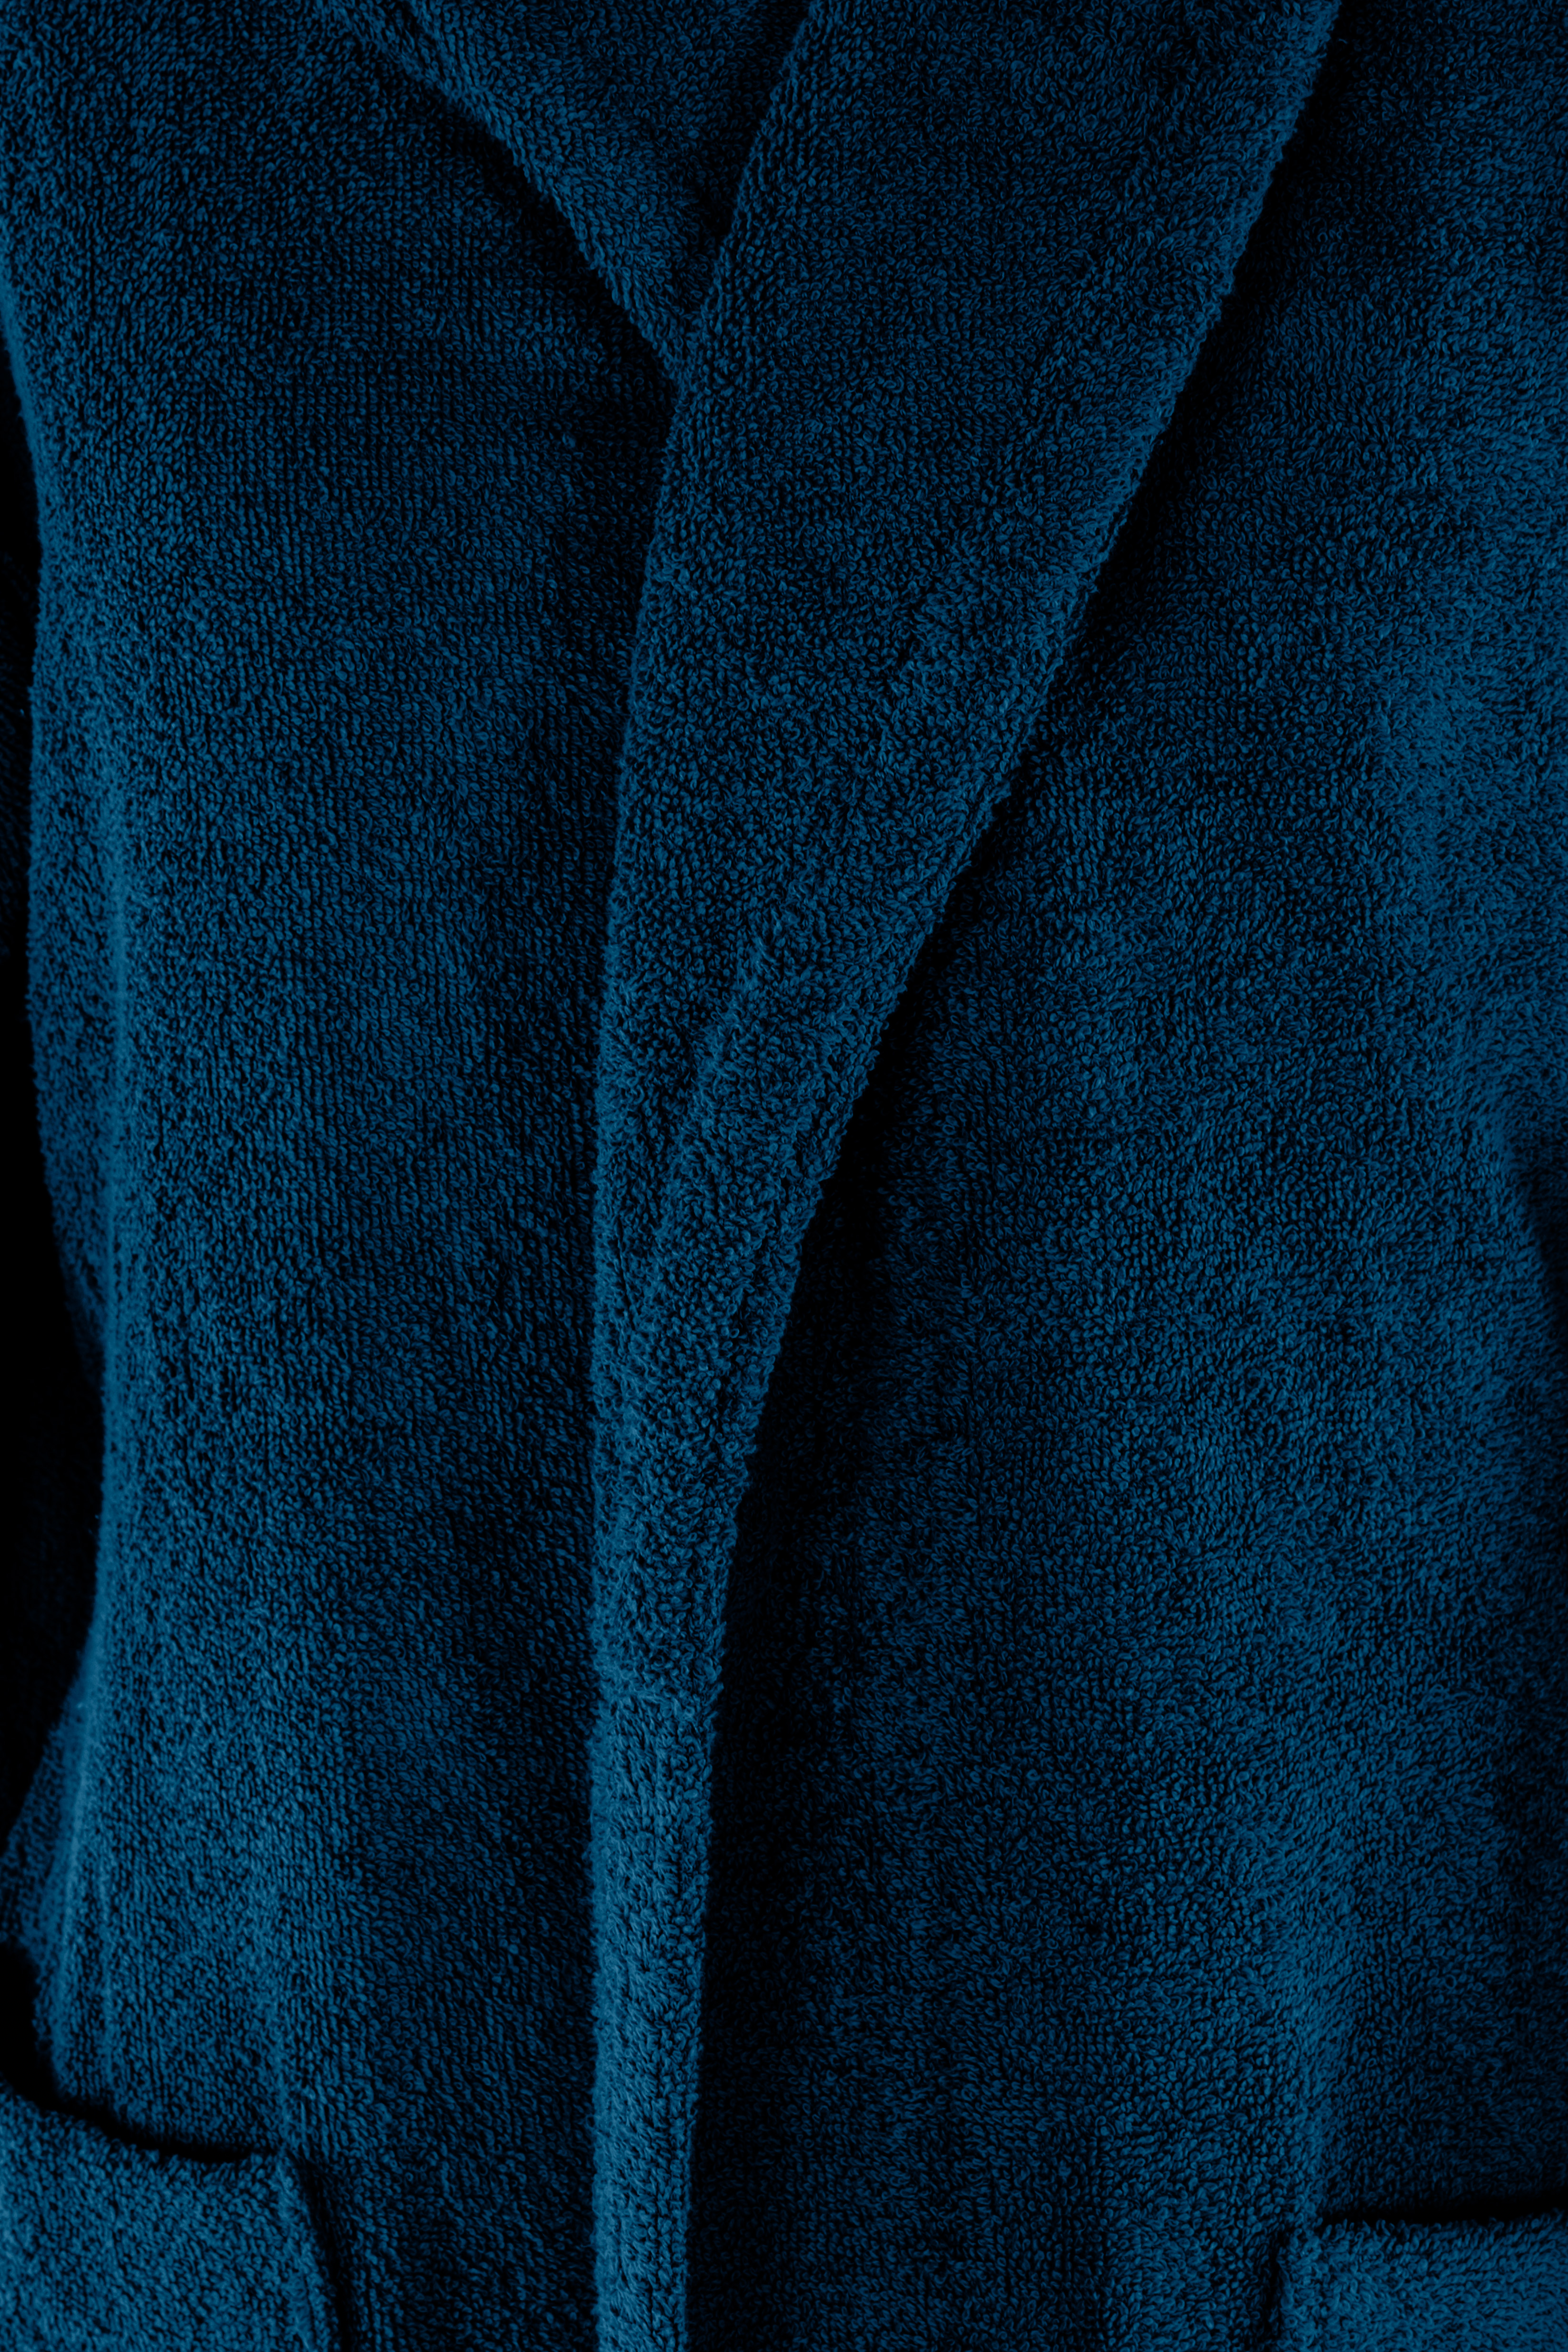 Peignoir DELUX S/M - dark blue